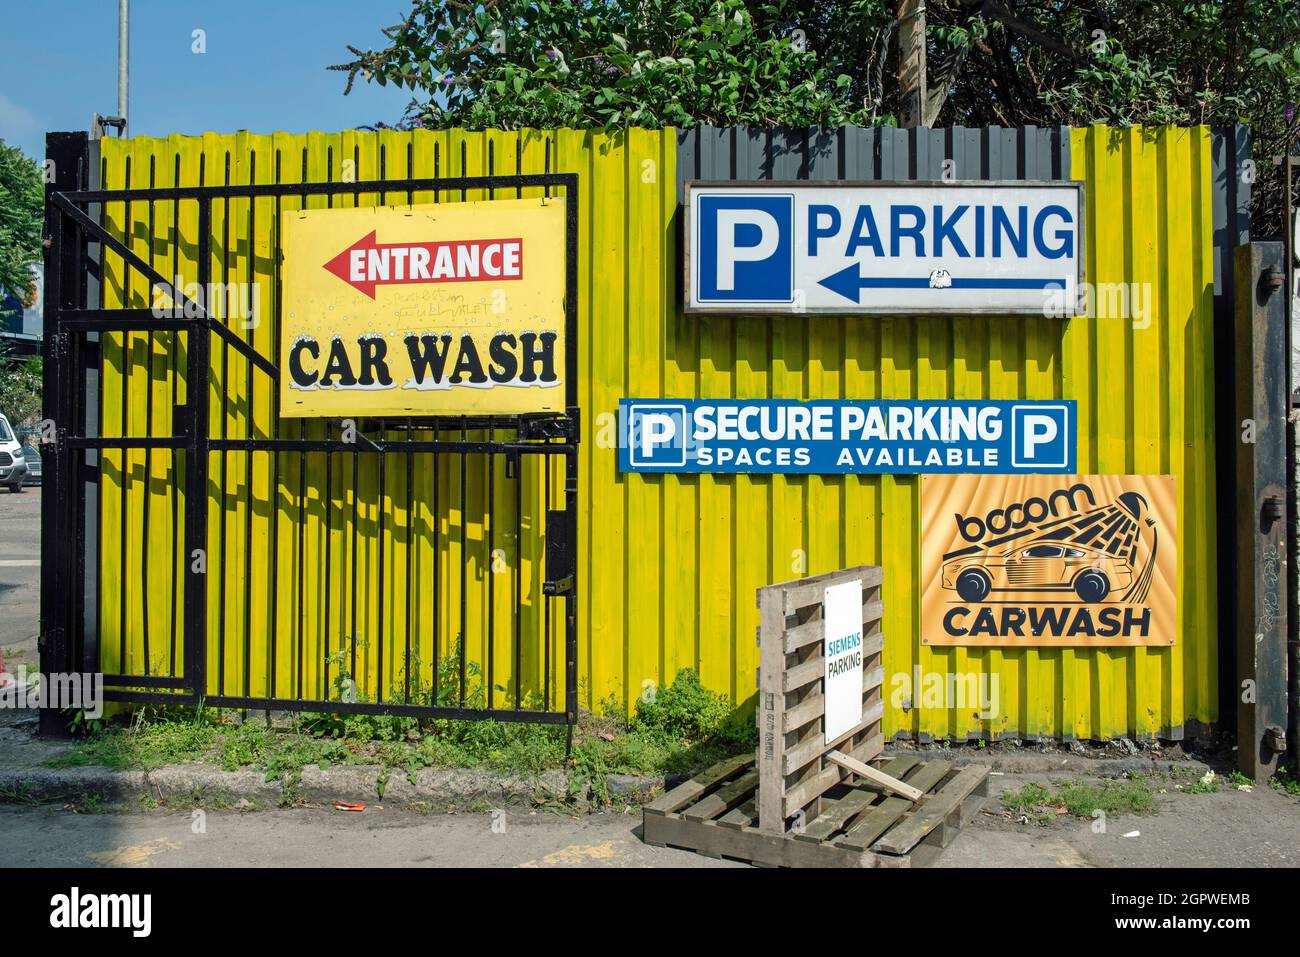 Entrée au lave-auto derrière une clôture jaune aux couleurs vives, parking sécurisé disponible, Holloway, London Borough of Islington Banque D'Images